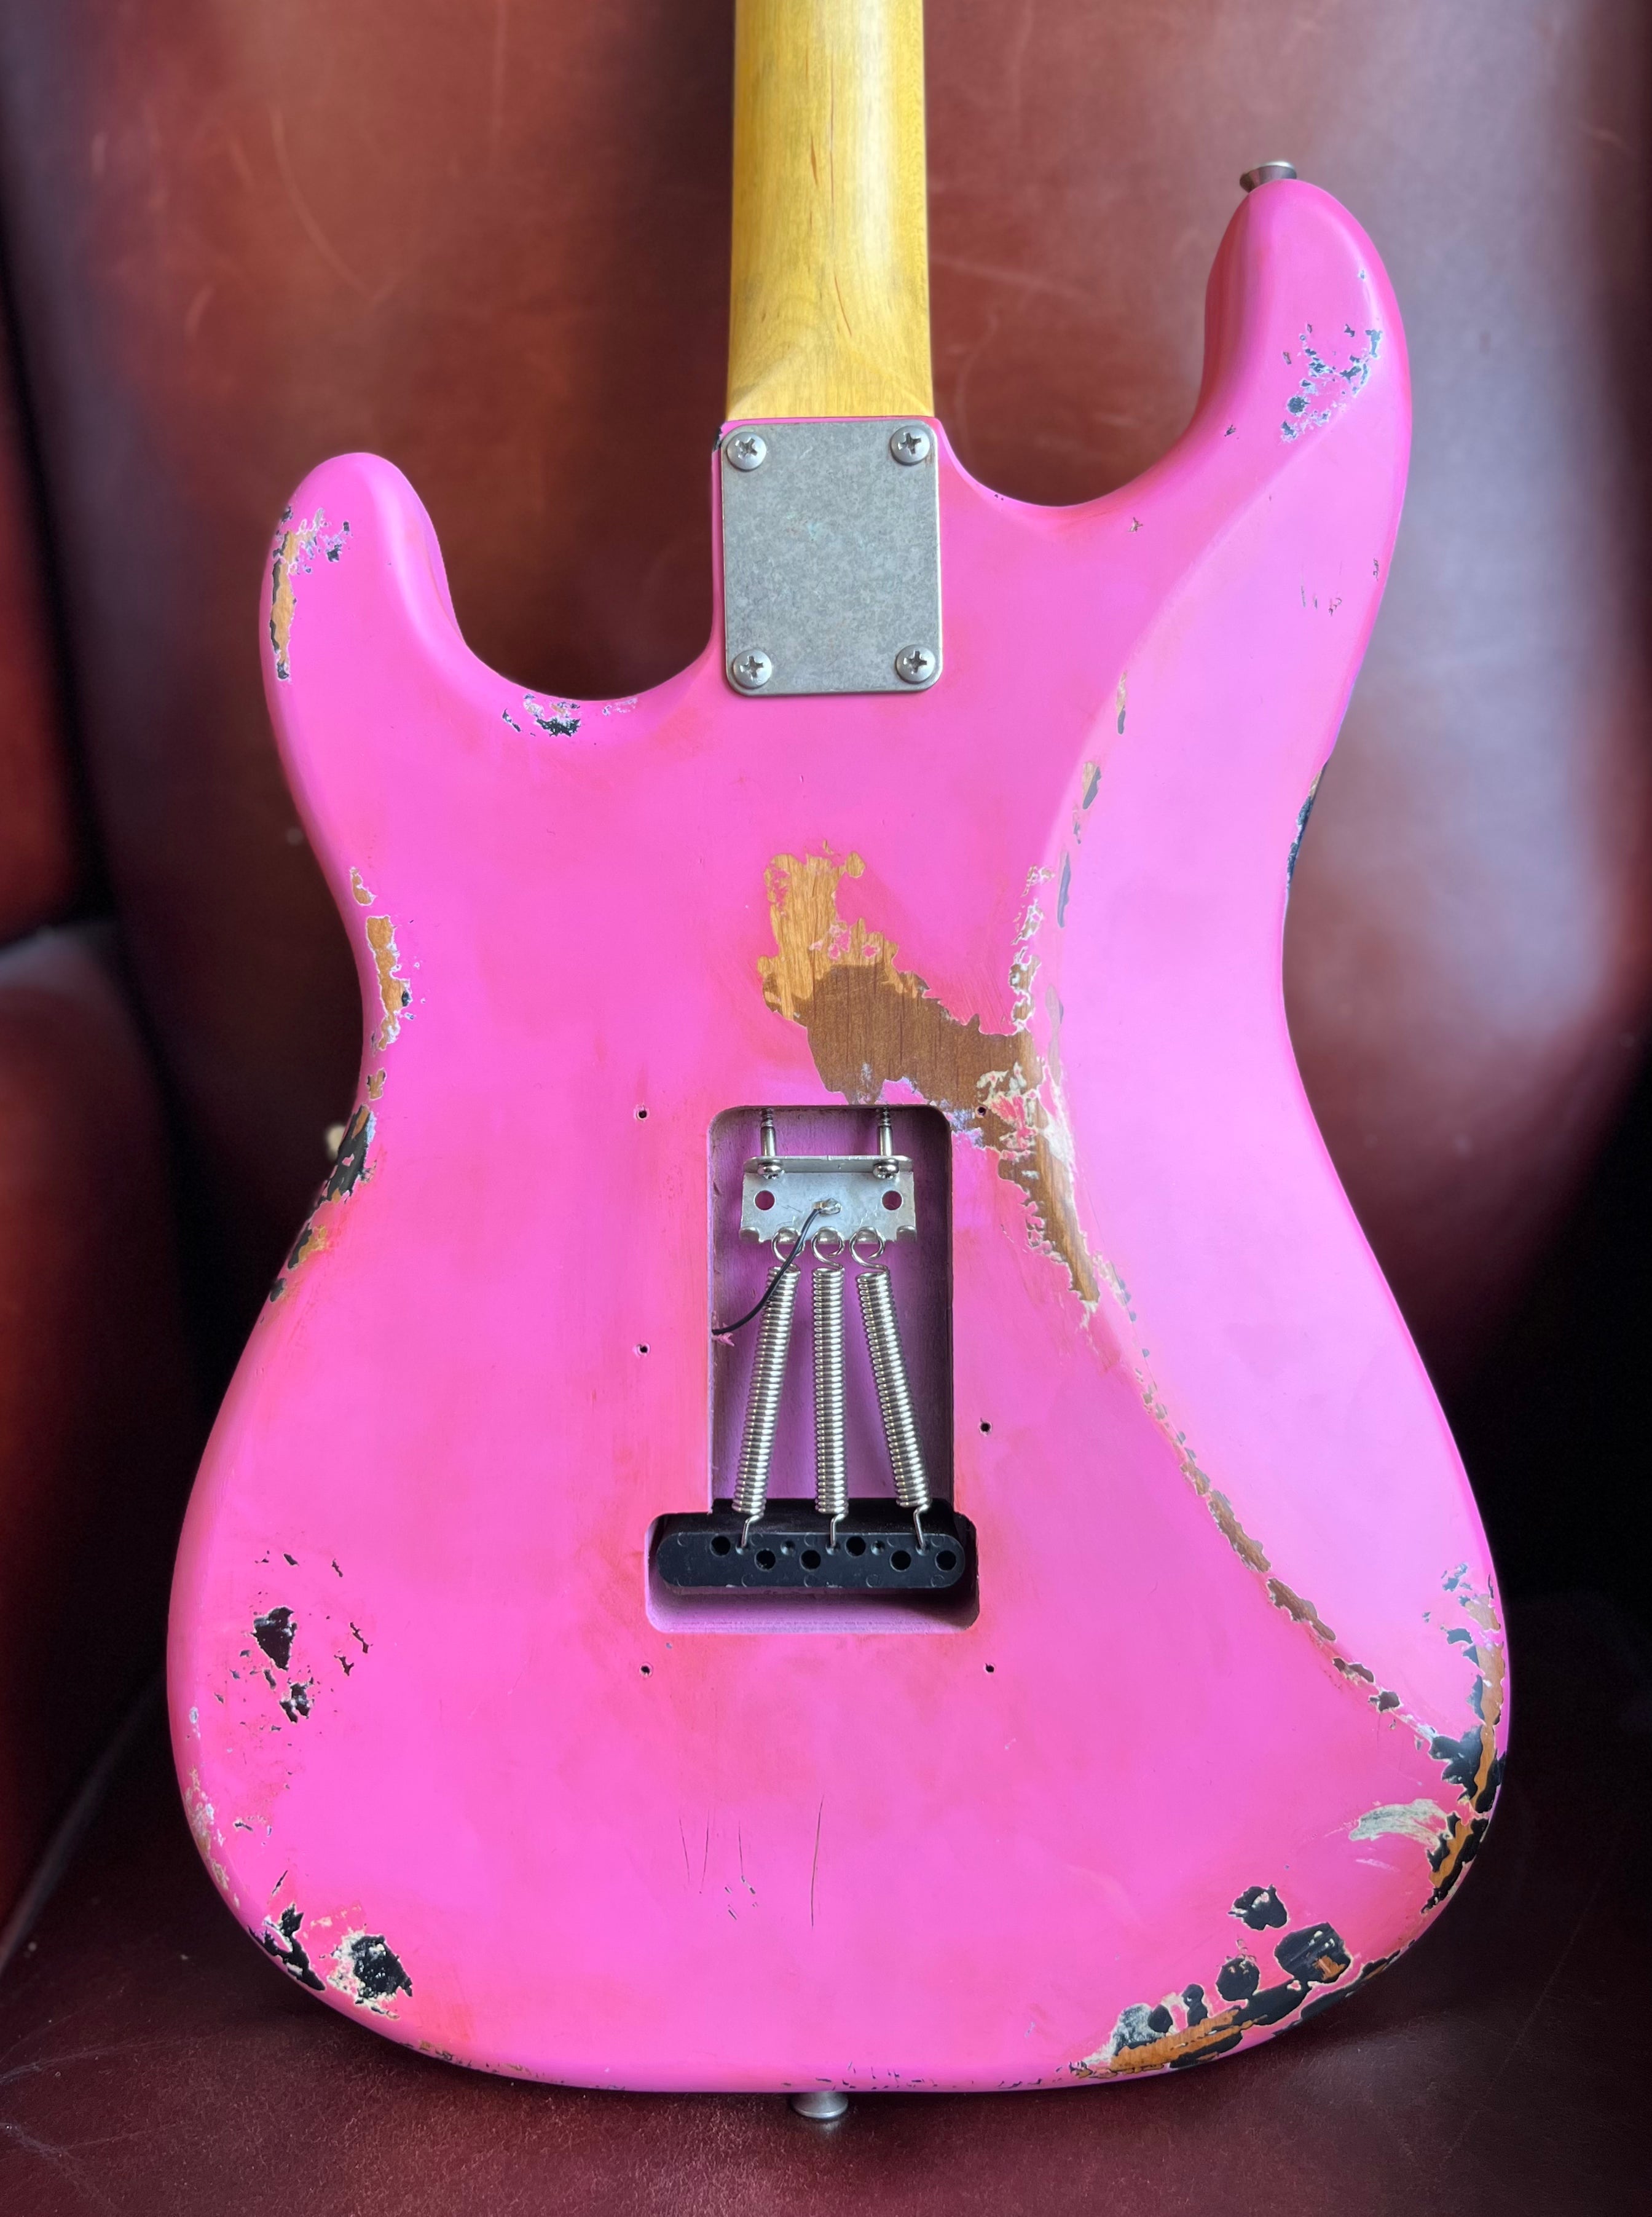 Vintage ProShop "Industrial Punk" Custom V6 in Radioactive Bubblegum Pink & FREE Custom Pro Setup, Electric Guitar for sale at Richards Guitars.